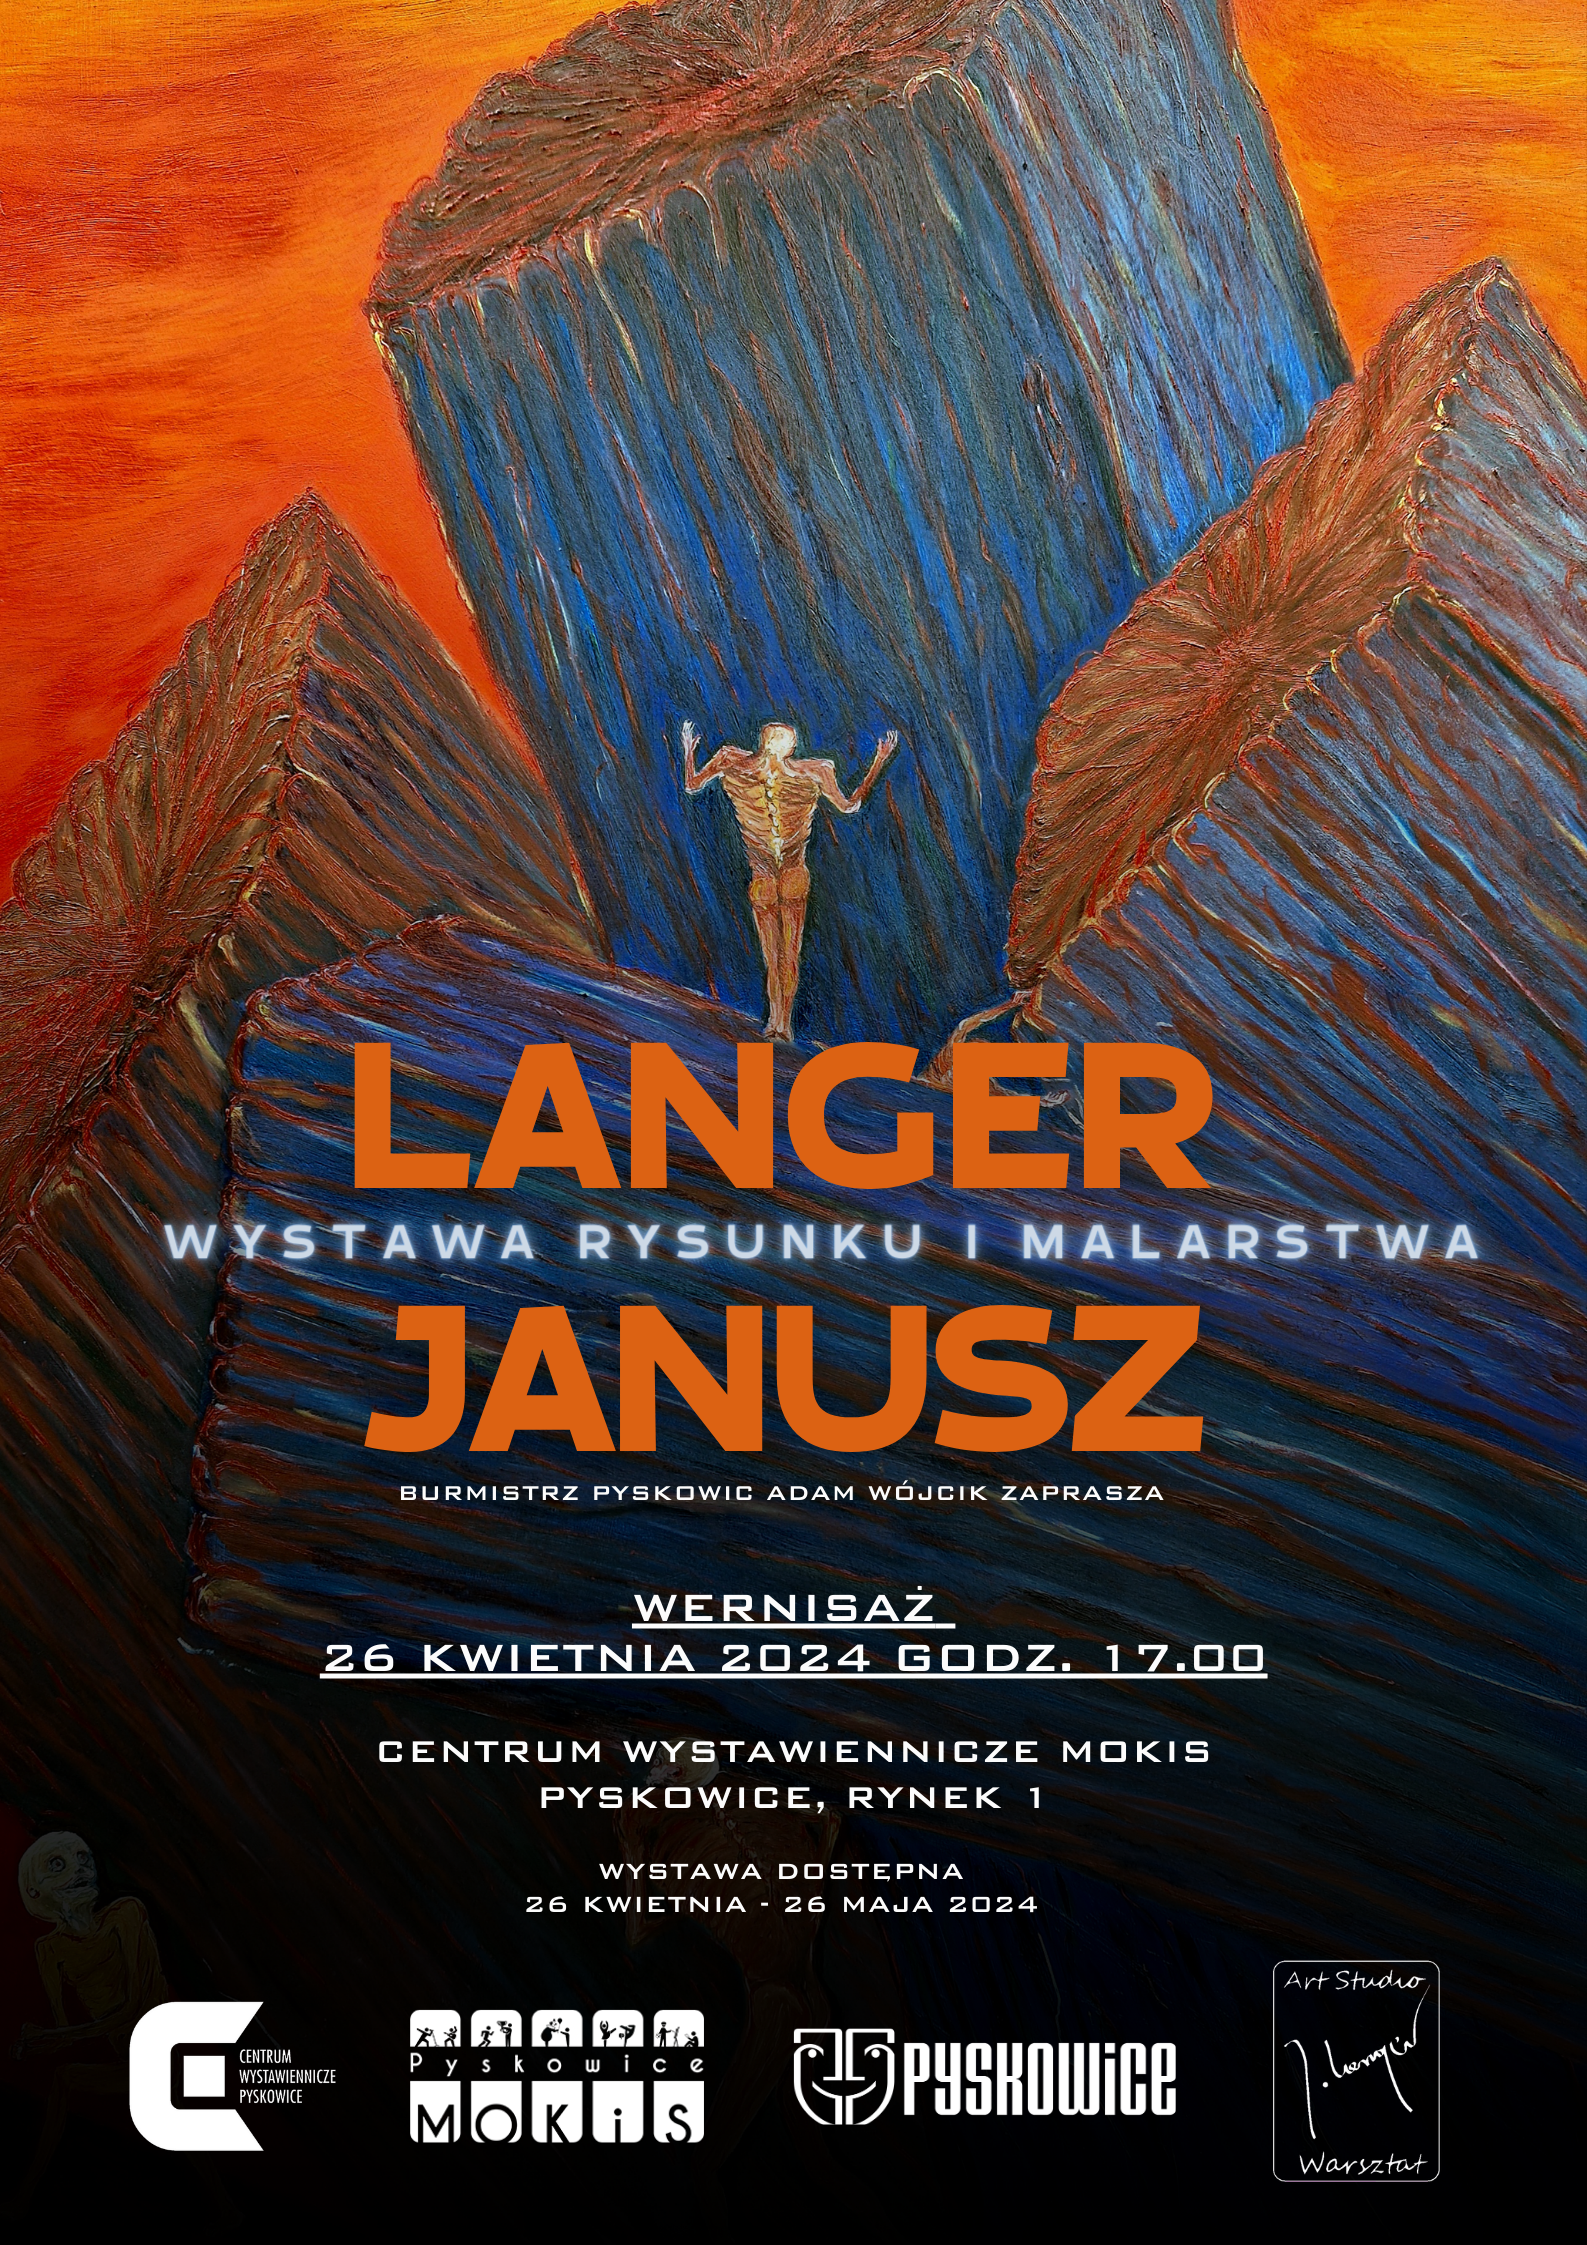 Plakat promujący wystawę rysunku i malarstwa Langer Janusz